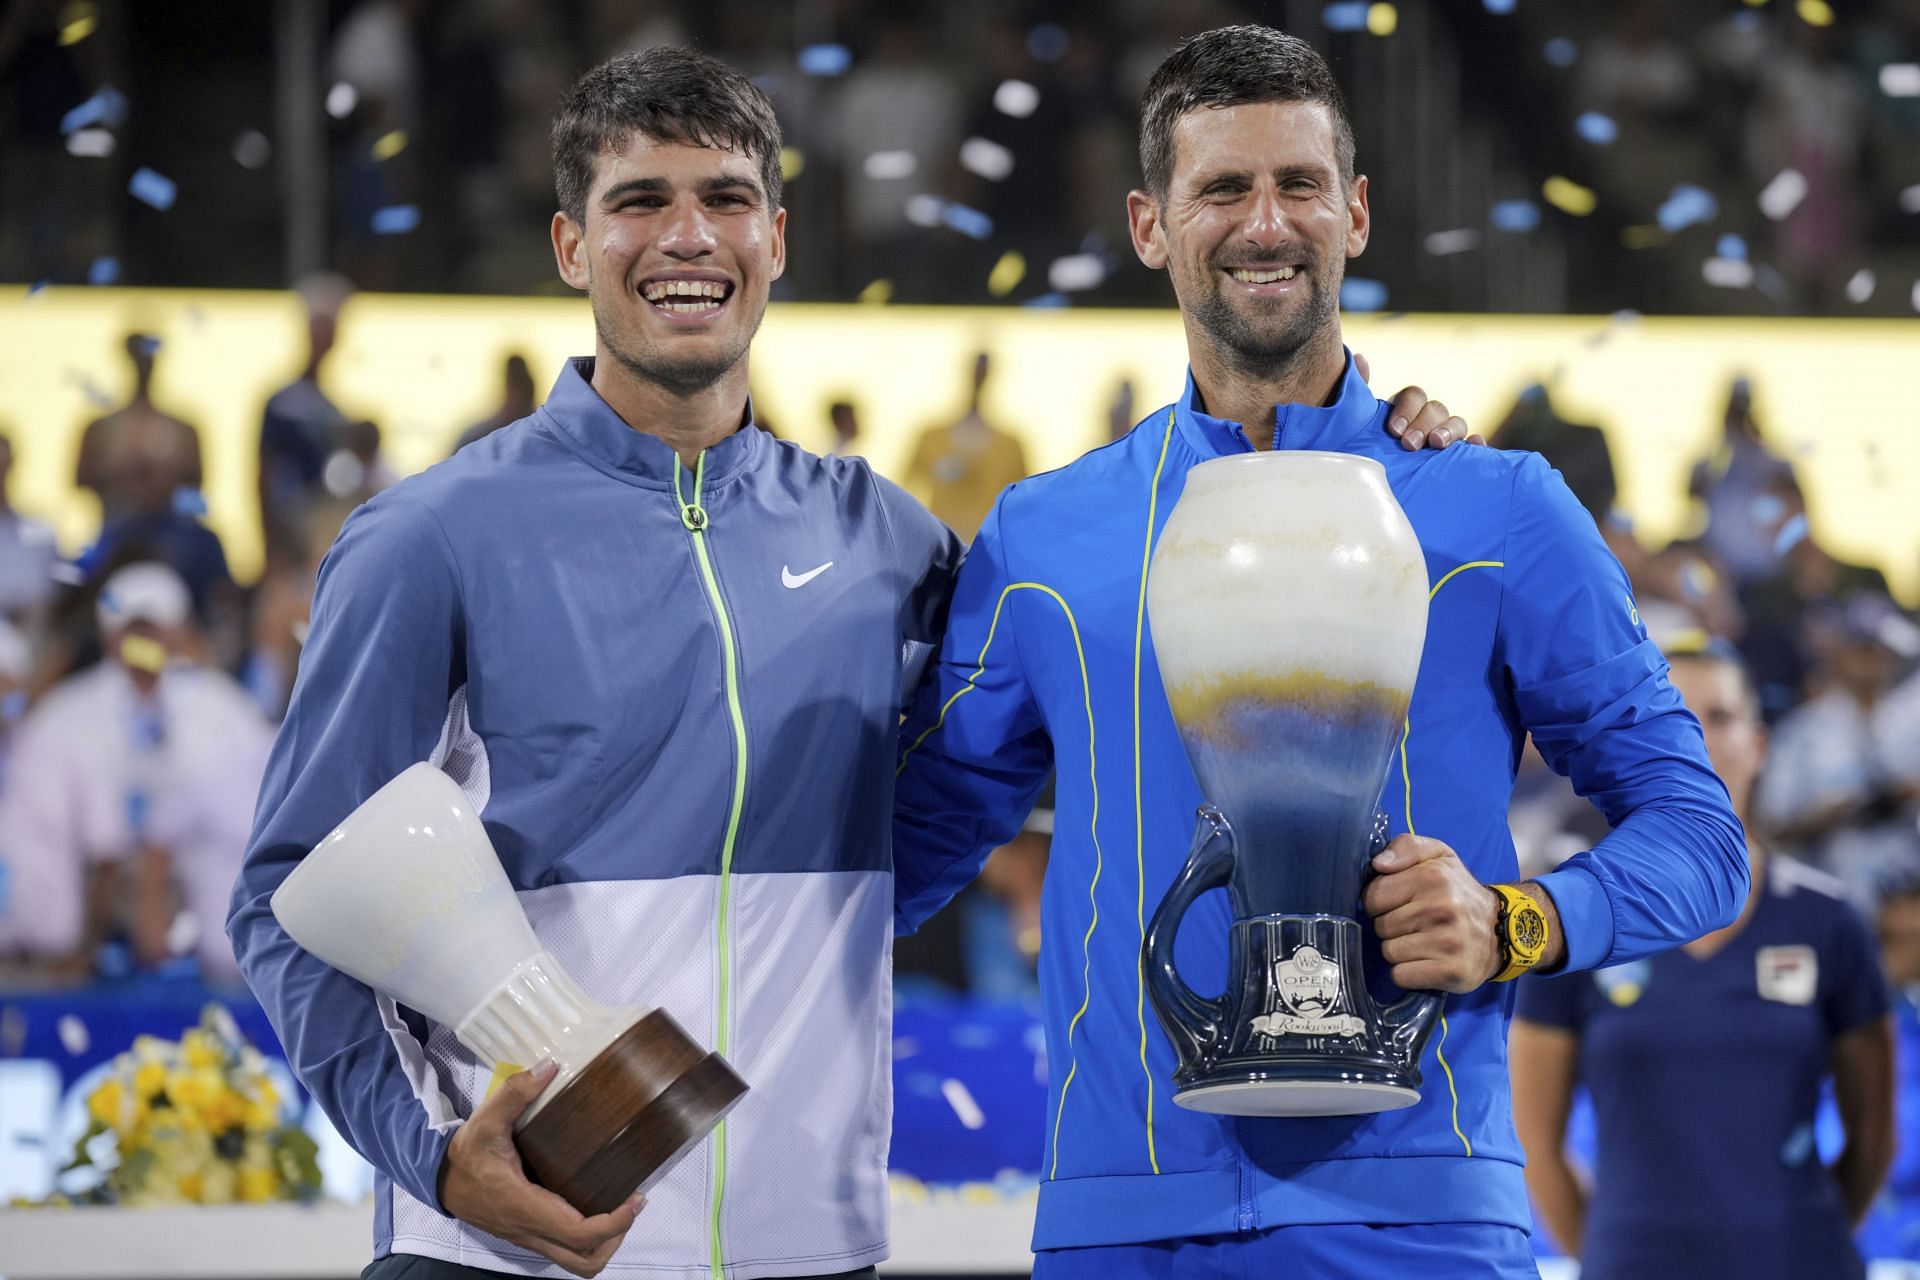 Novak Djokovic defeated Carlos Alcaraz in the Cincinnati Open final